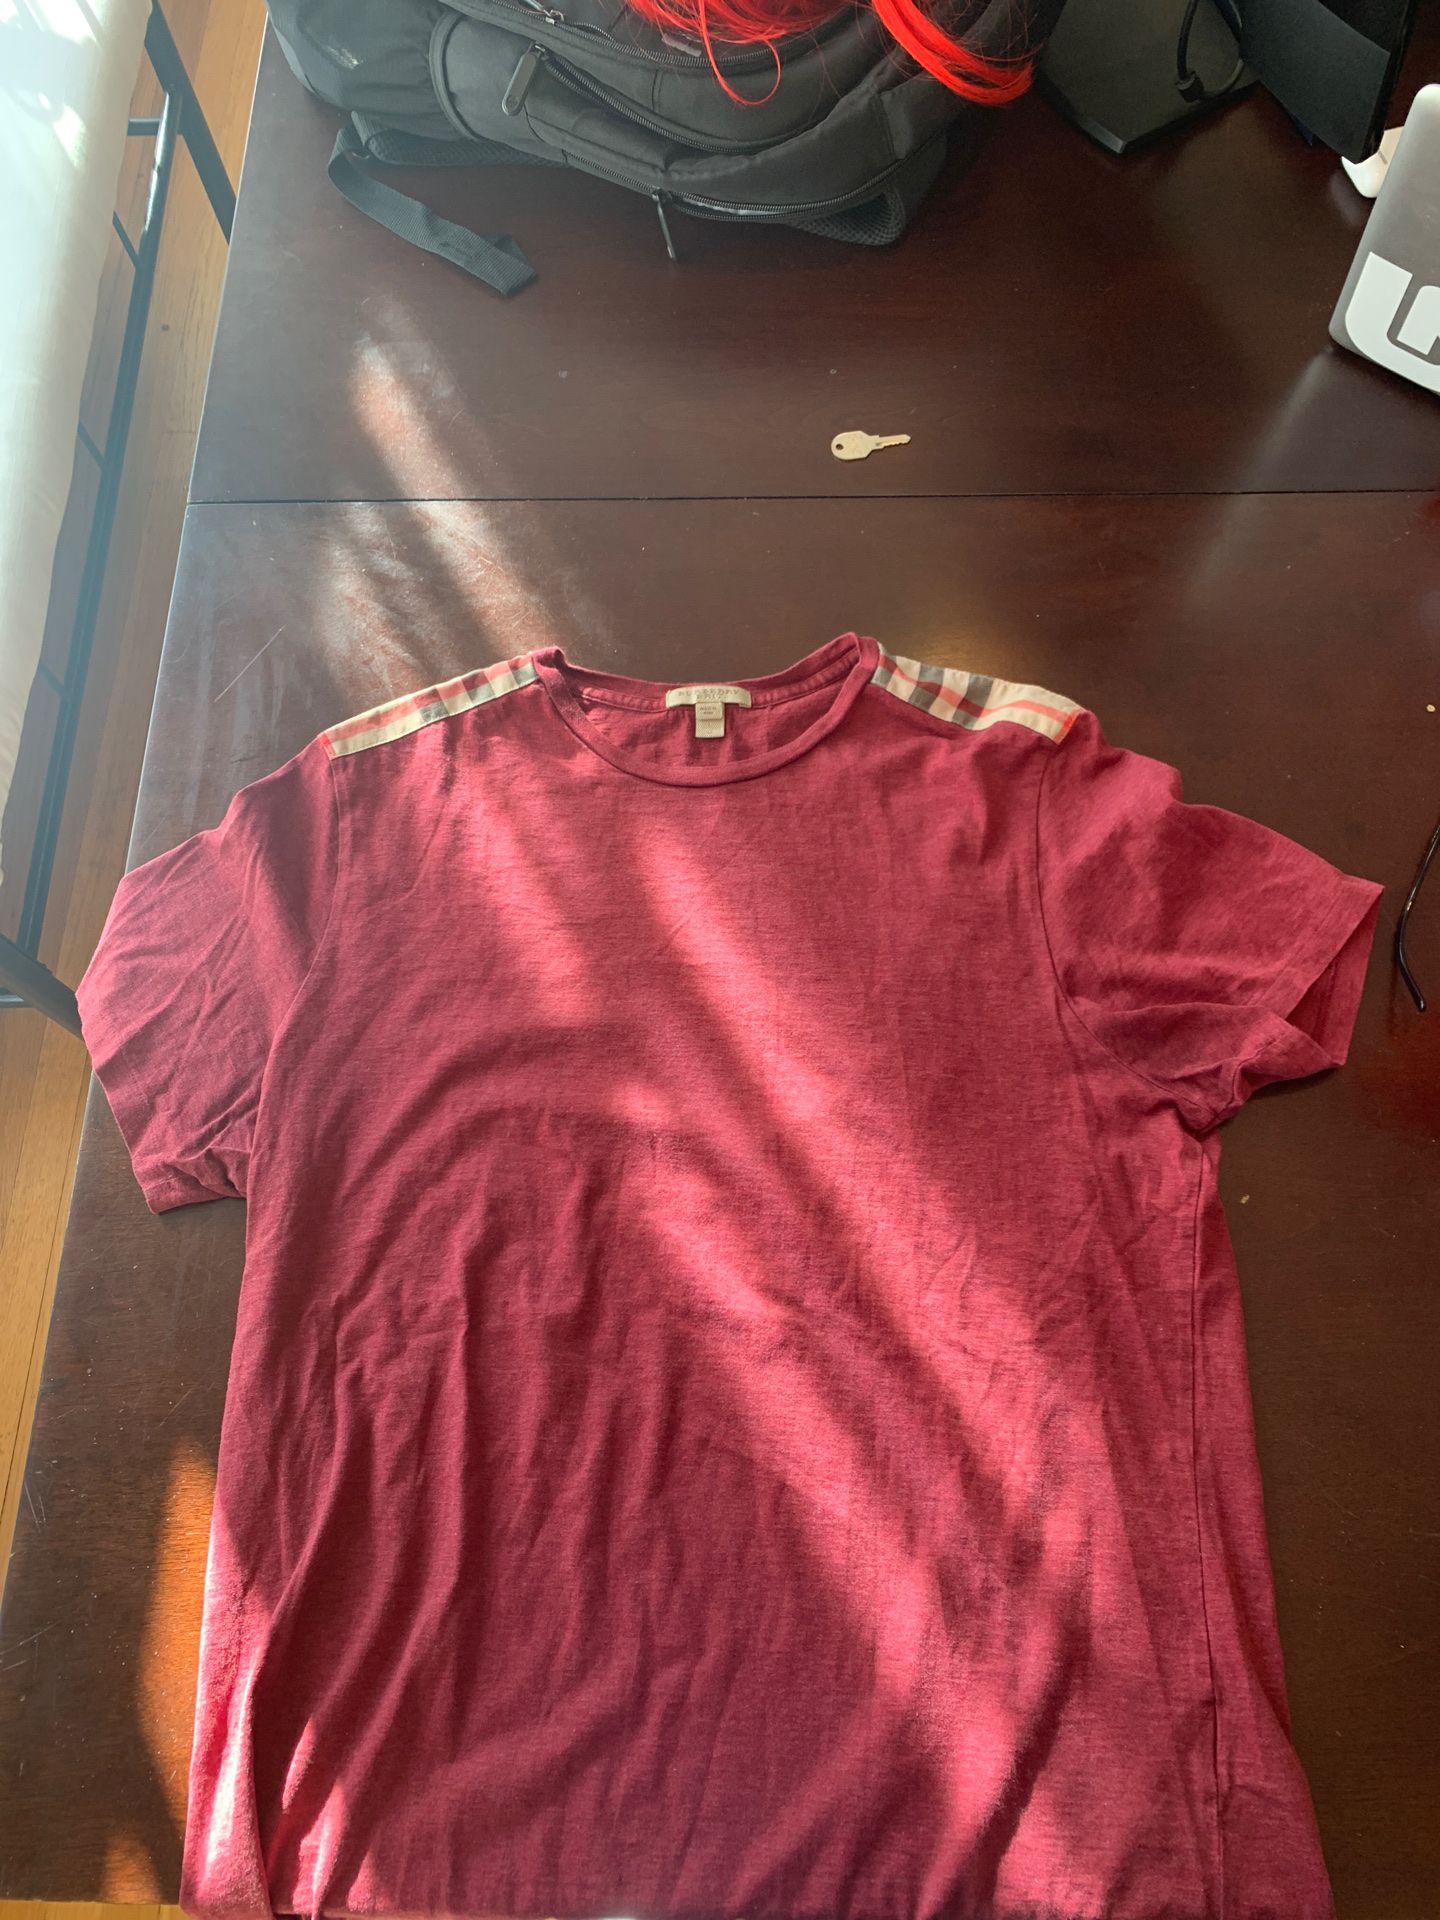 Men’s Burberry short sleeve shirt sz L (authentic)